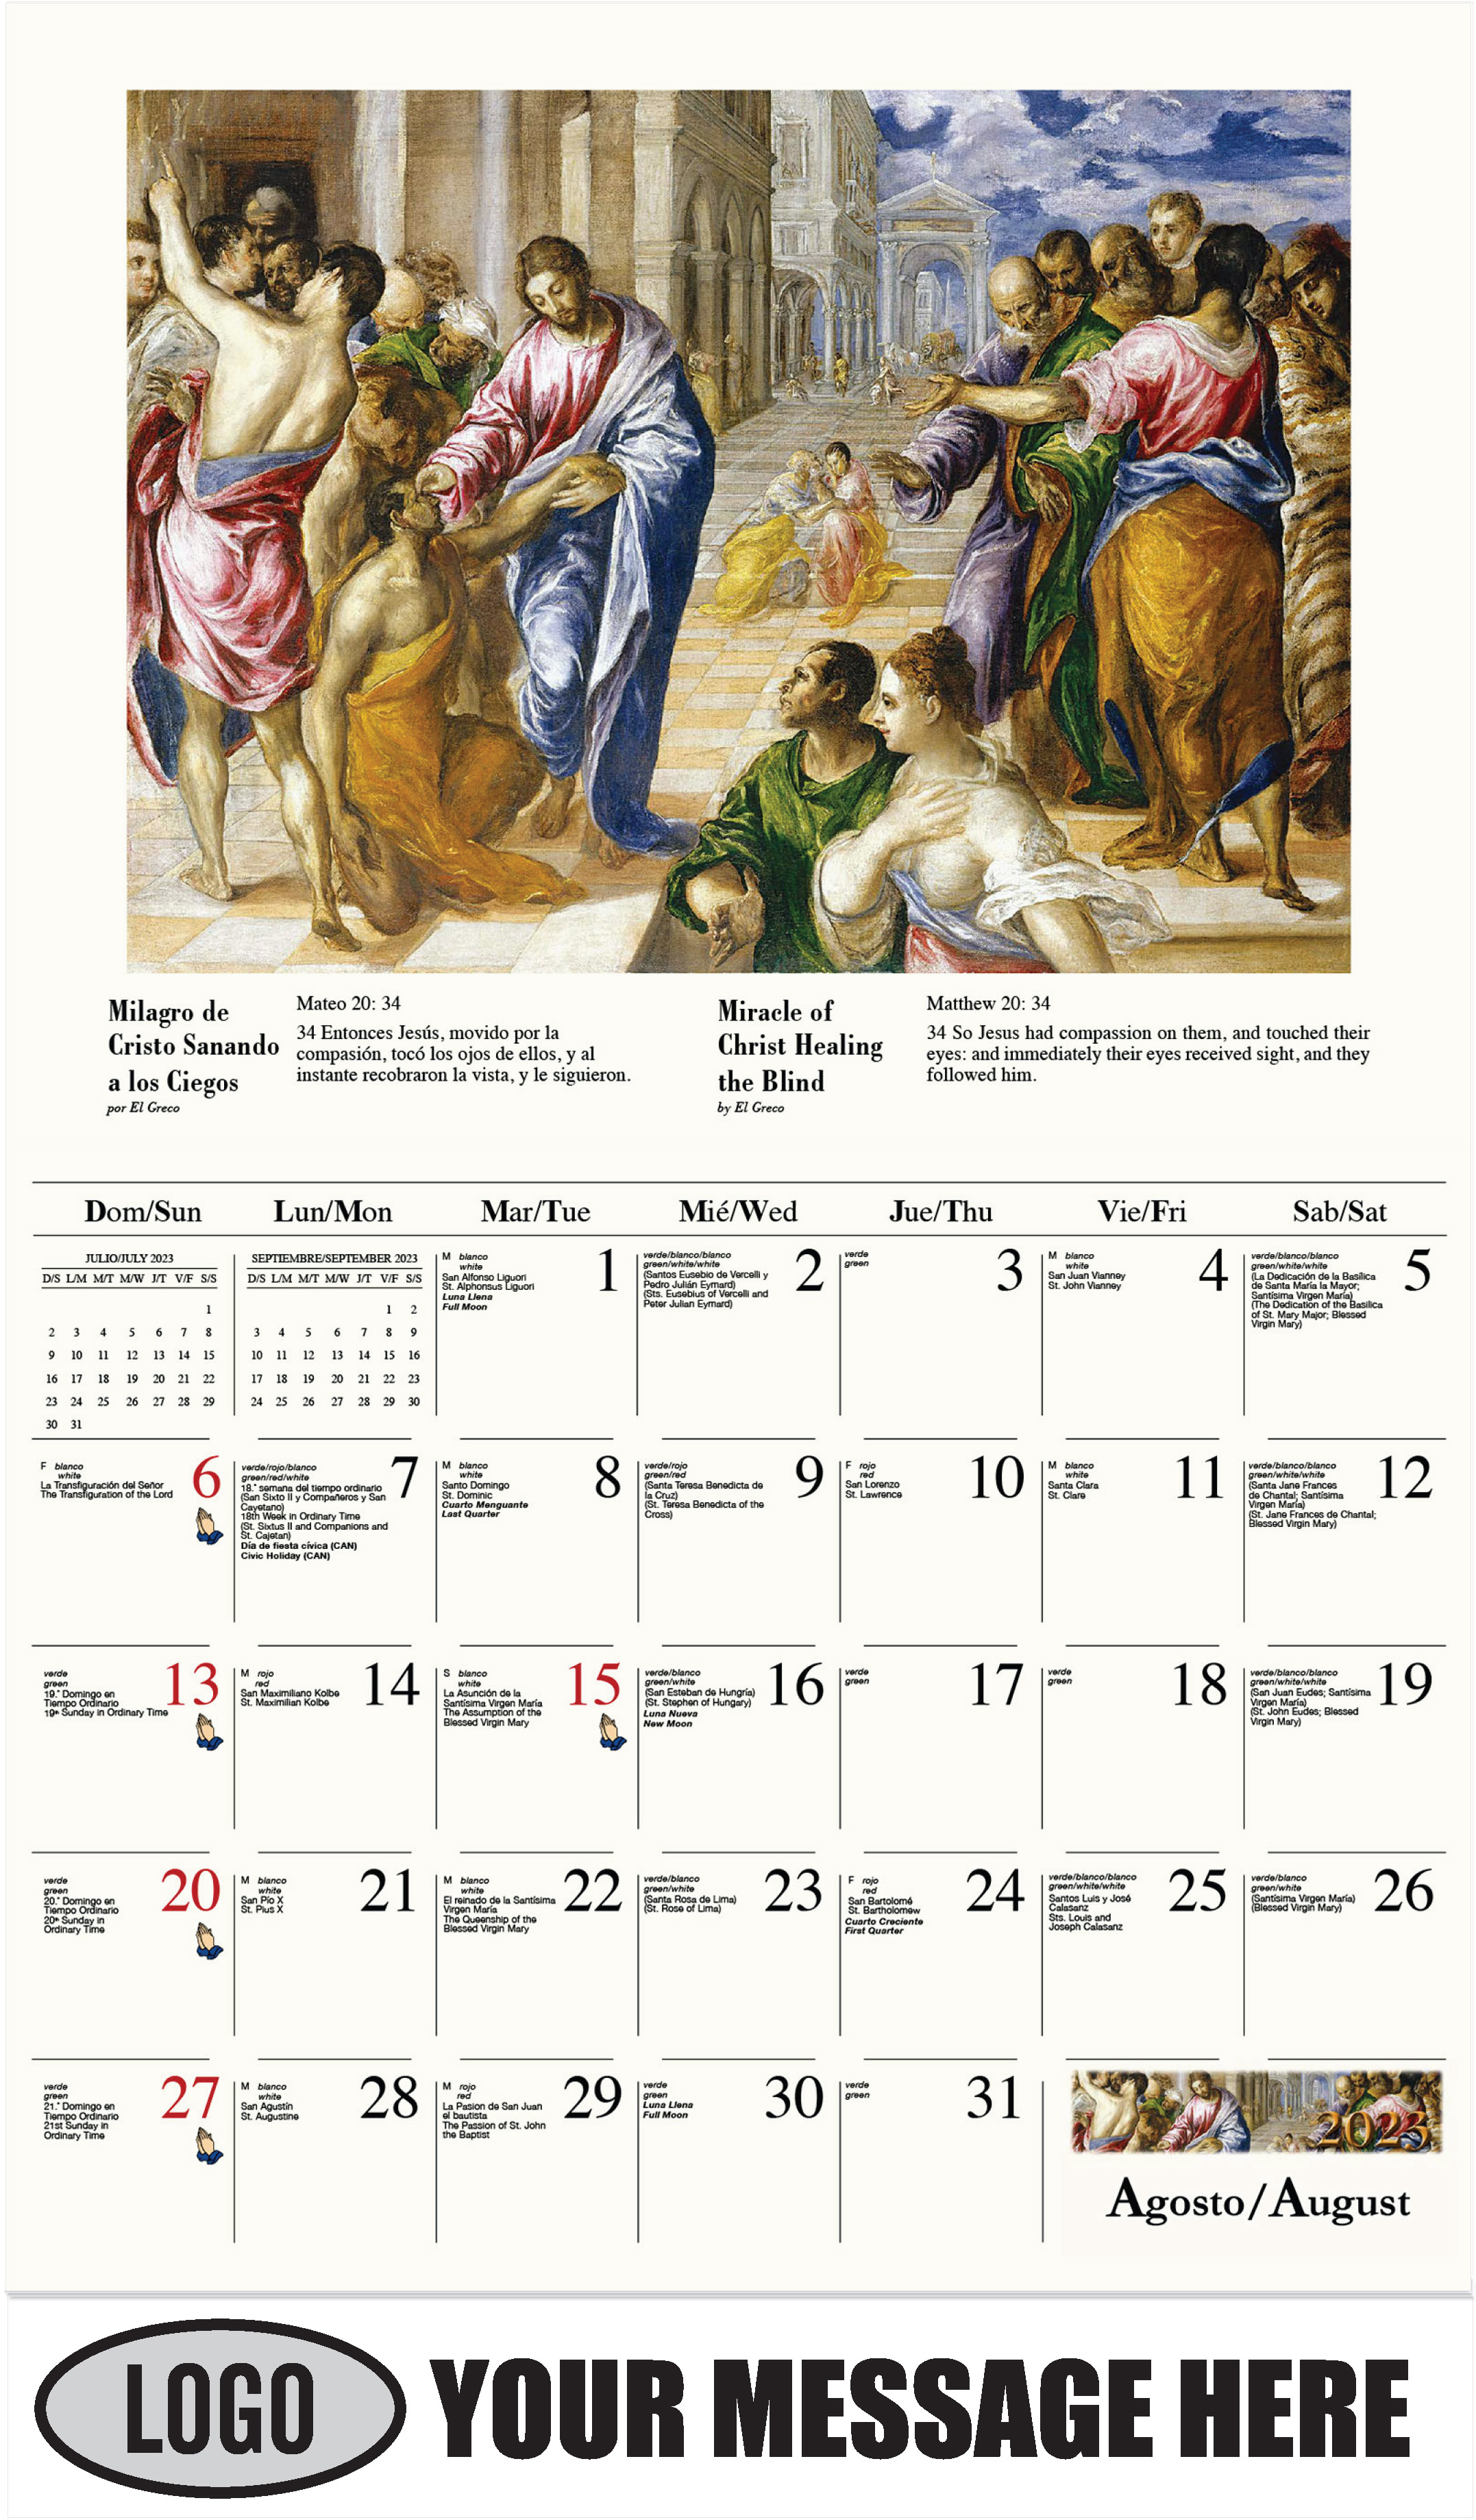 Milagro de Cristo sanando a los ciegos por El Greco - August - Catholic Inspiration (Spanish-English bilingual) 2023 Promotional Calendar